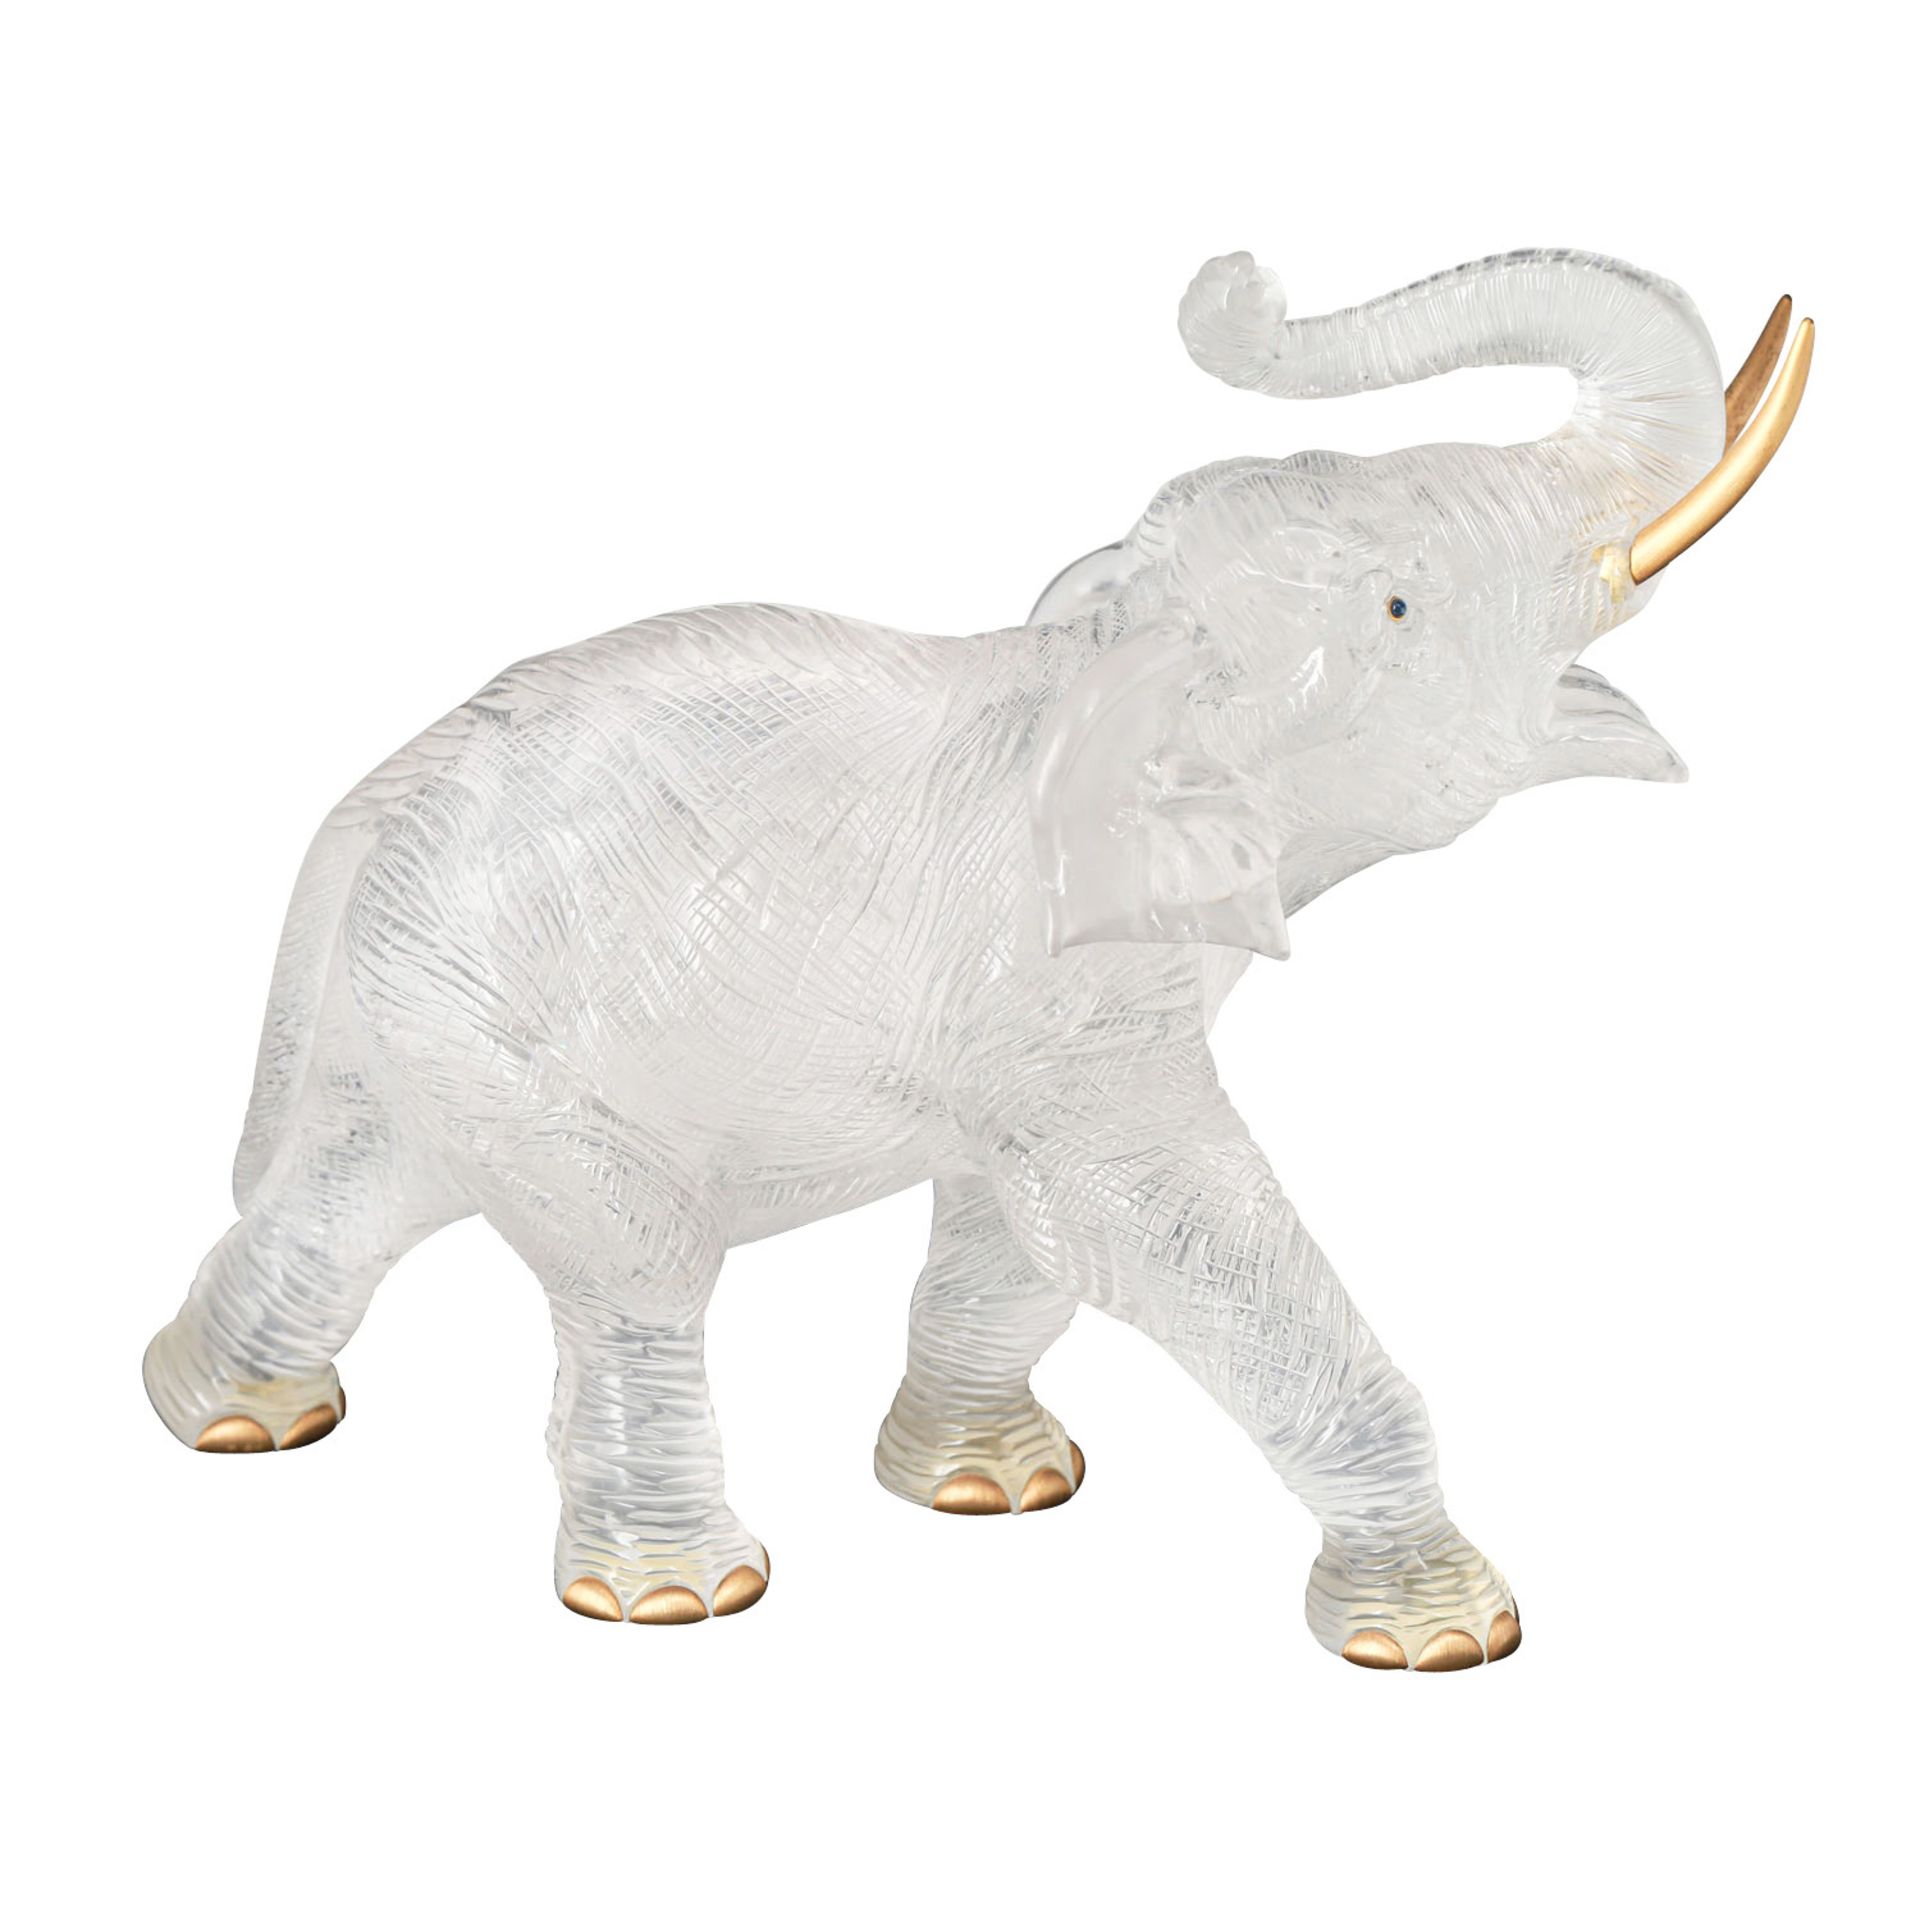 Außergewöhnliche Bergkristallskulptur "Elefant",gekauft 2004 in St. Moritz (CH) für 28.000 CHF. - Bild 5 aus 10